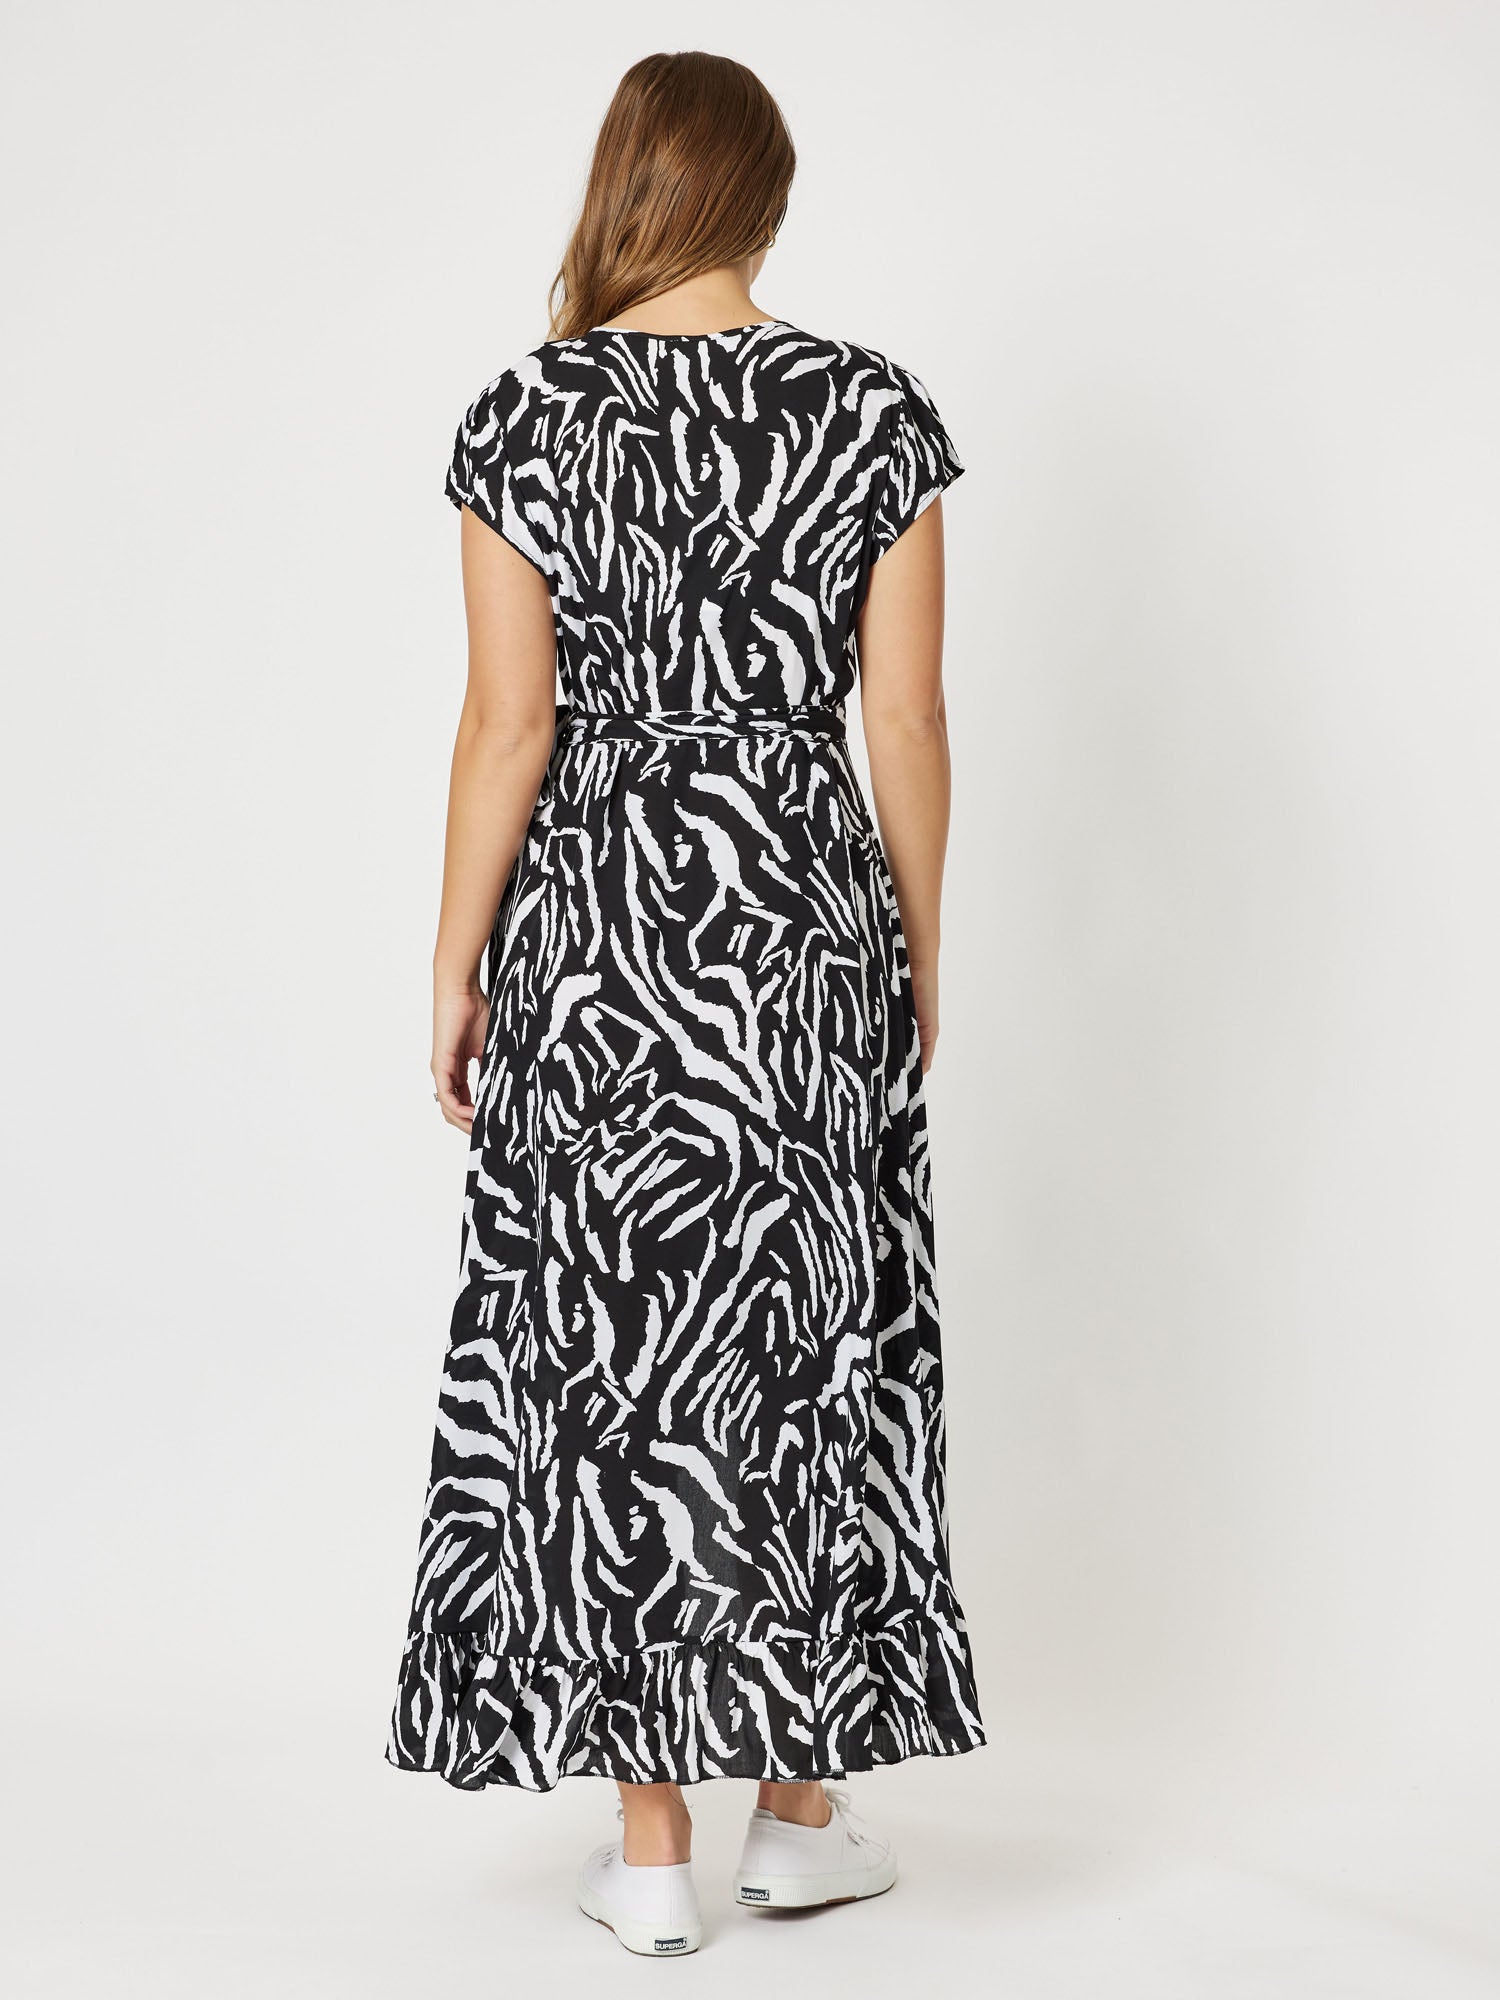 Zebra Print Wrap Dress - Zebra